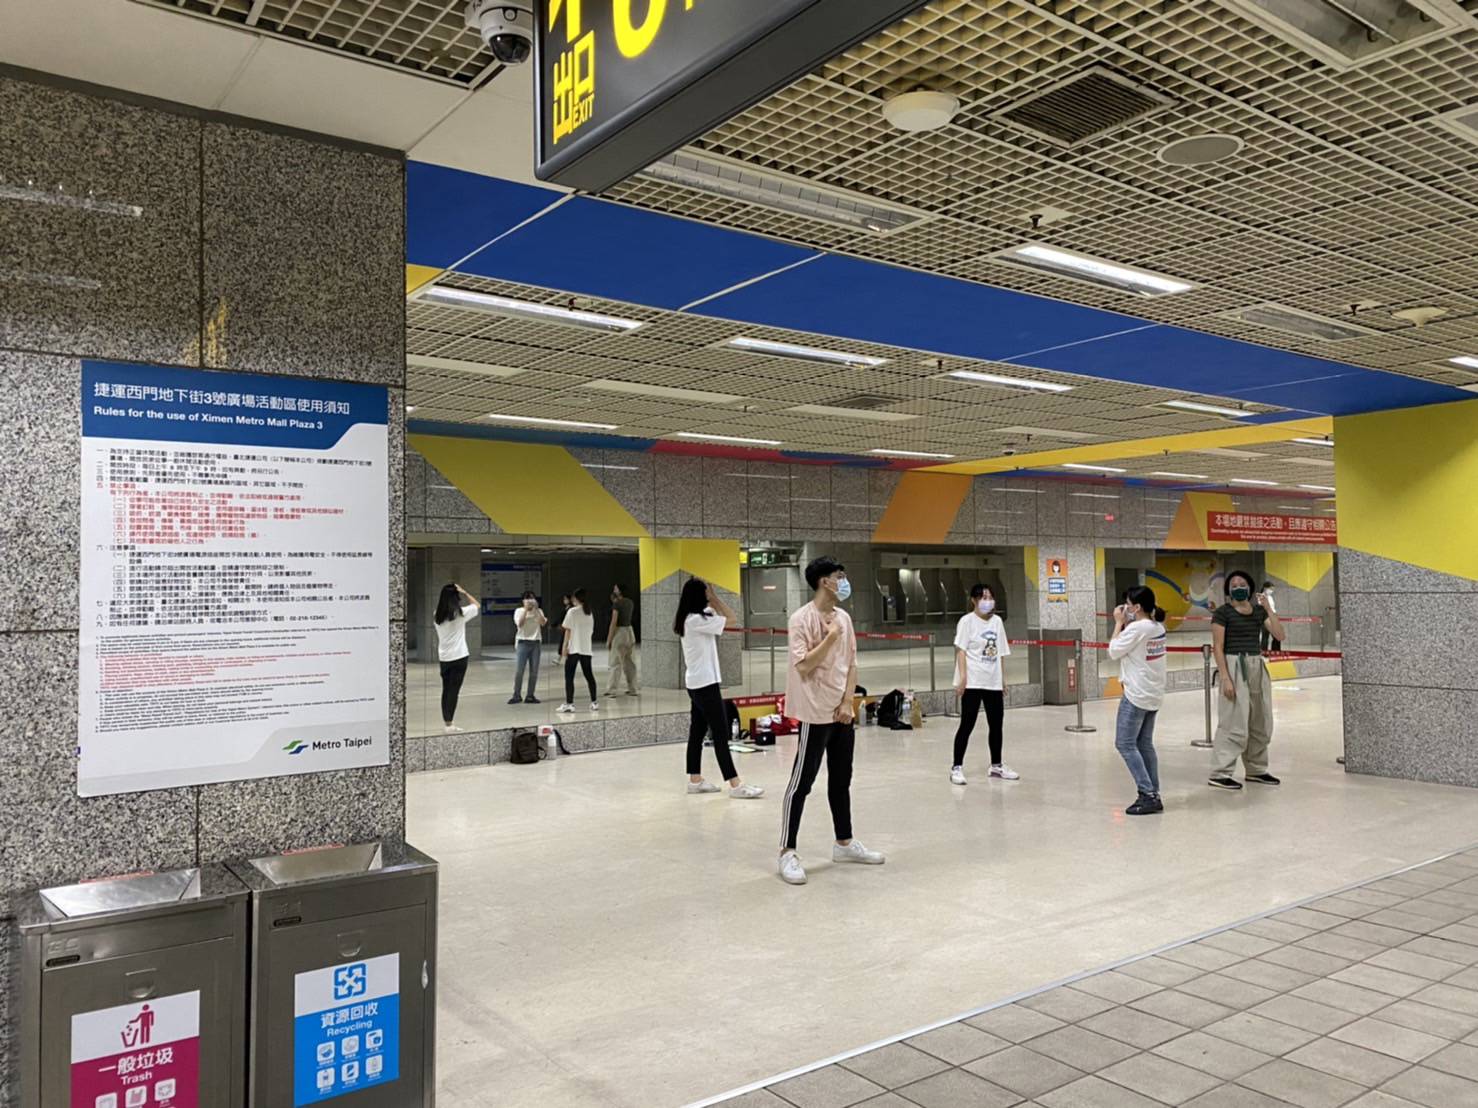 Warga juga dapat kembali menggunakan arena tari terbuka di bagian stasiun bawah tanah. Sumber: MRT Taipei